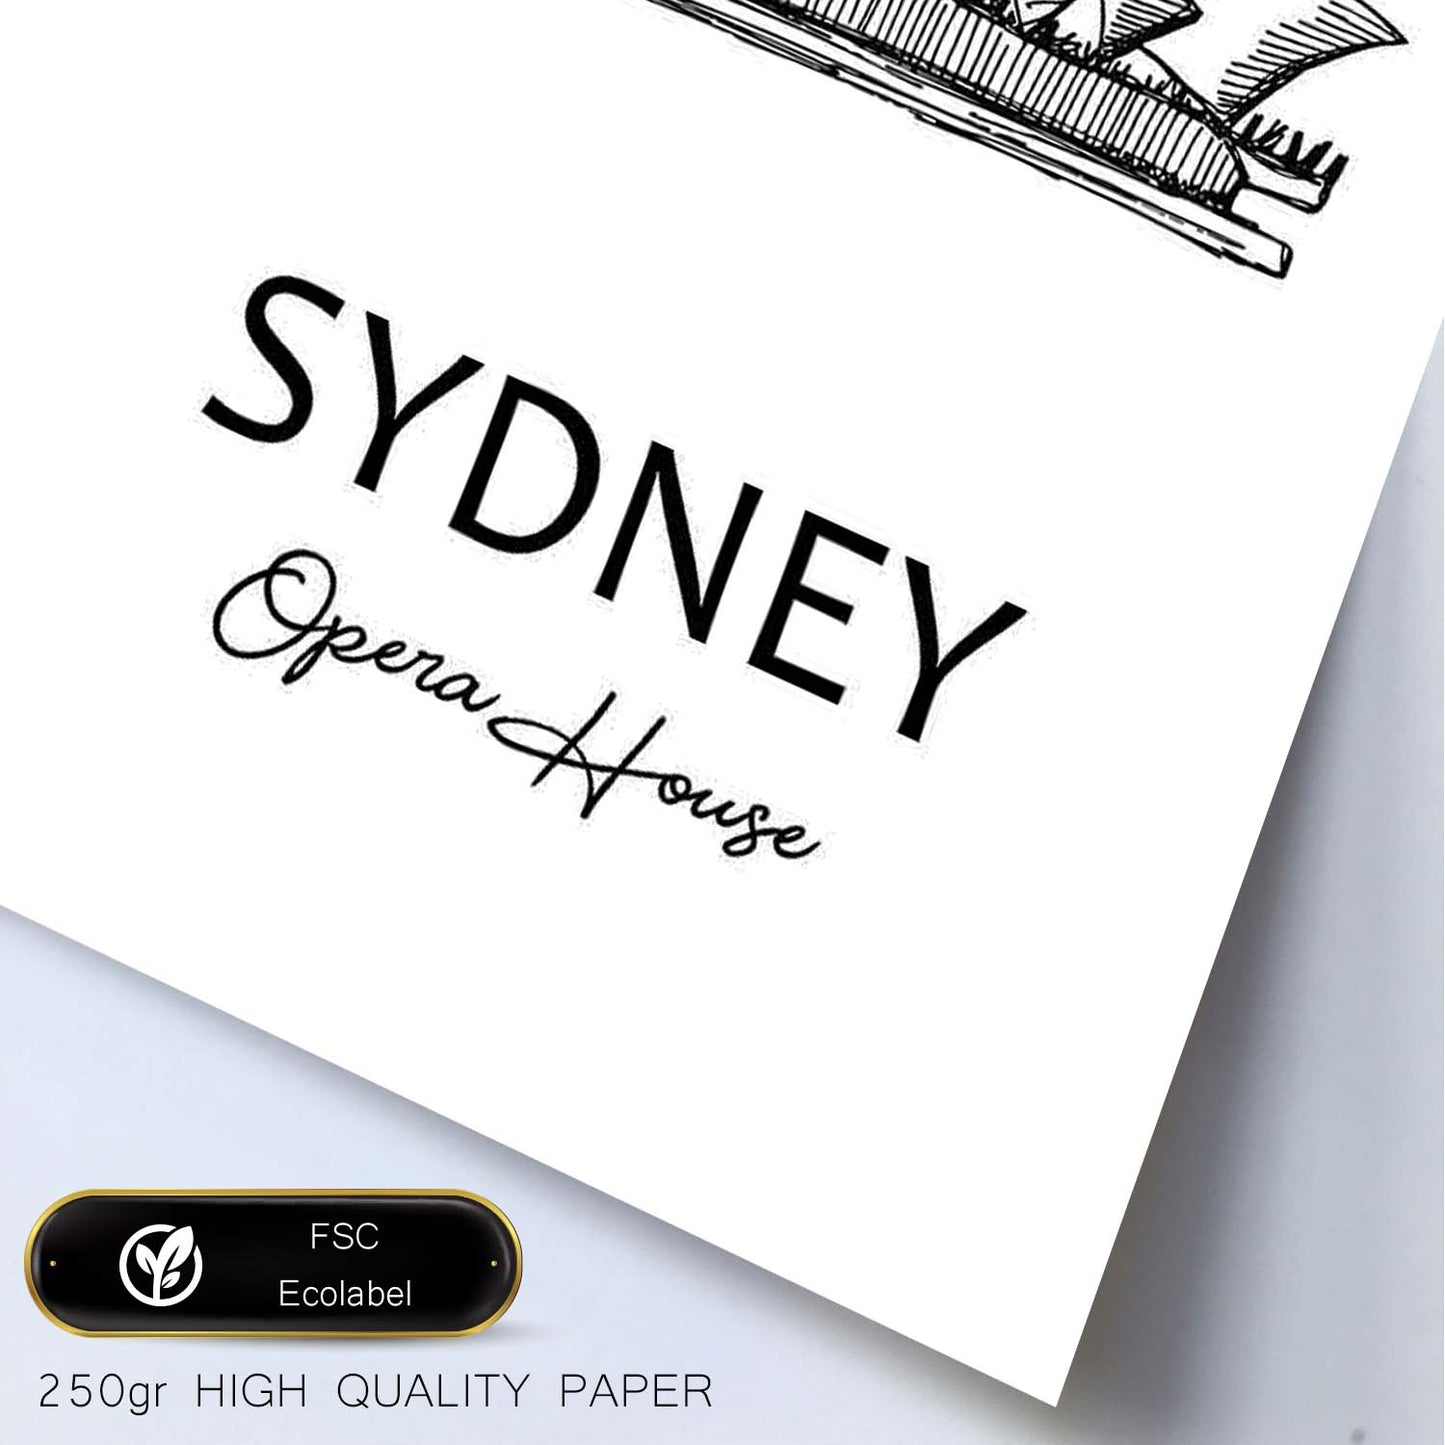 Poster de Sydney - Casa de la ópera. Láminas con monumentos de ciudades.-Artwork-Nacnic-Nacnic Estudio SL